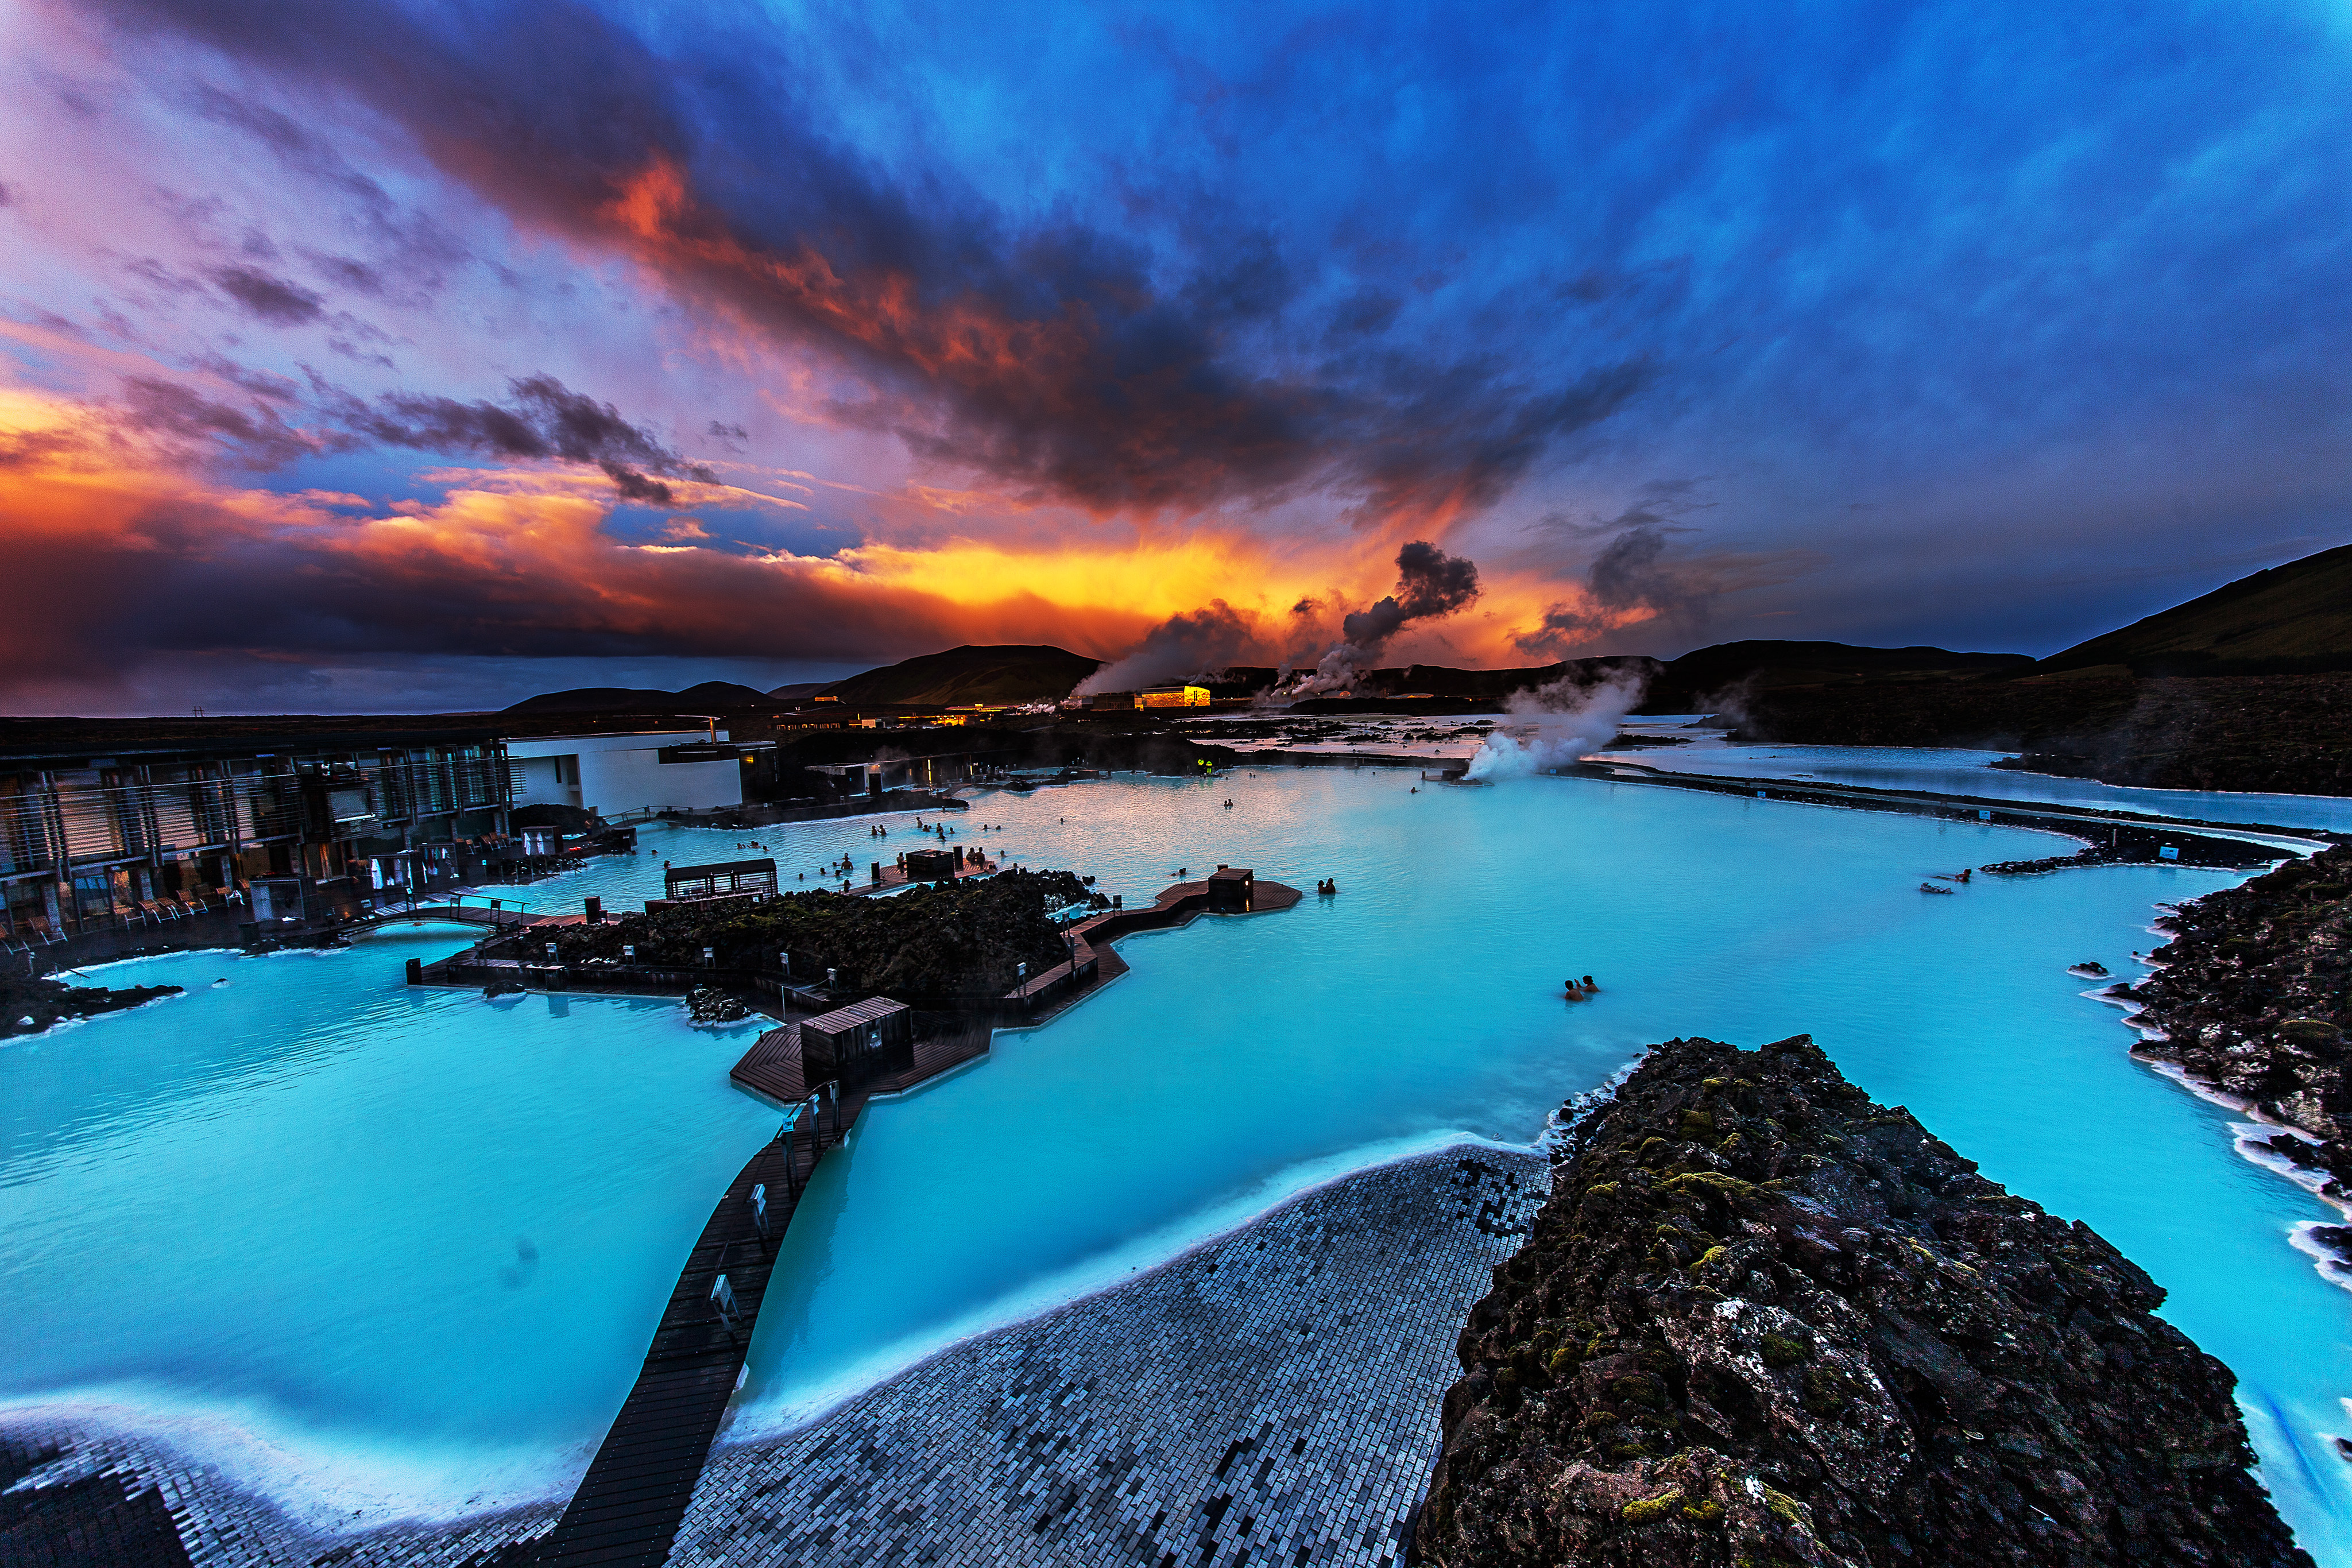 Den geotermiske Blue Lagoon Spa lever fint op til sit navn og har smukt azurblåt vand.